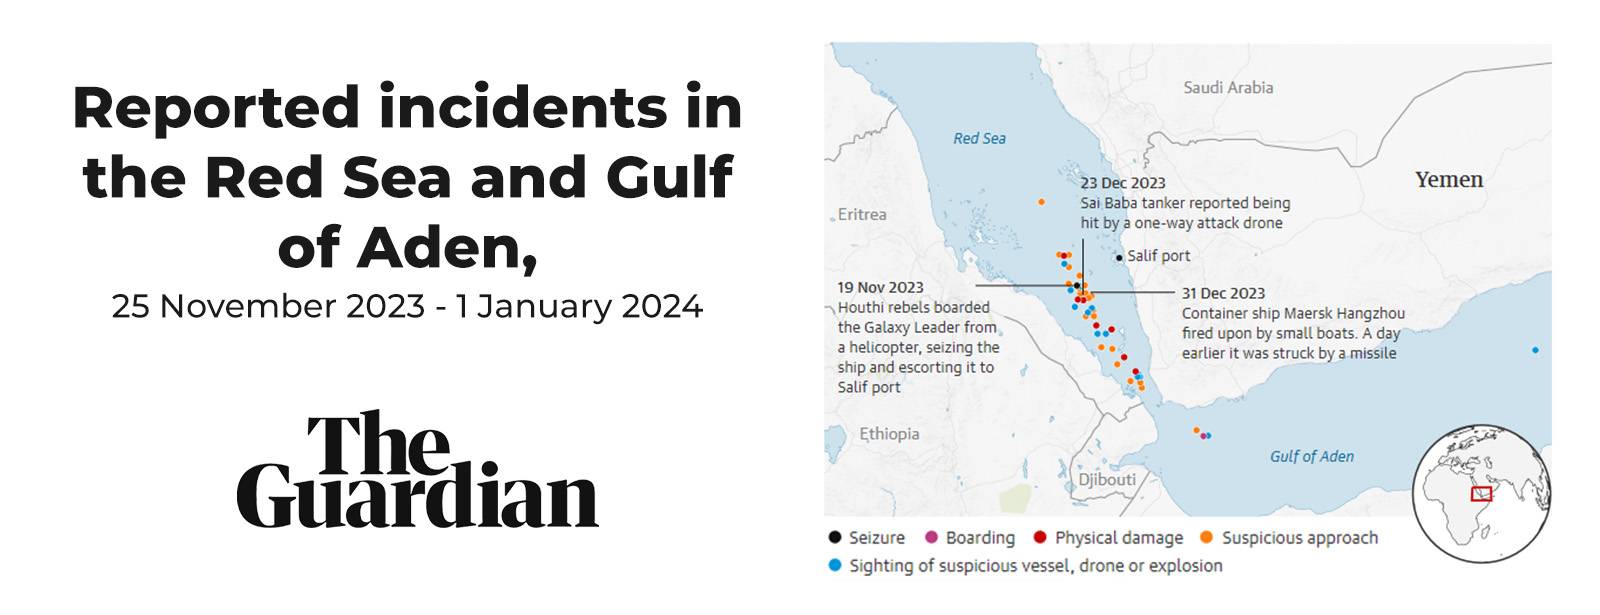 Incidentes reportados en el Mar Rojo y el Golfo de Adén